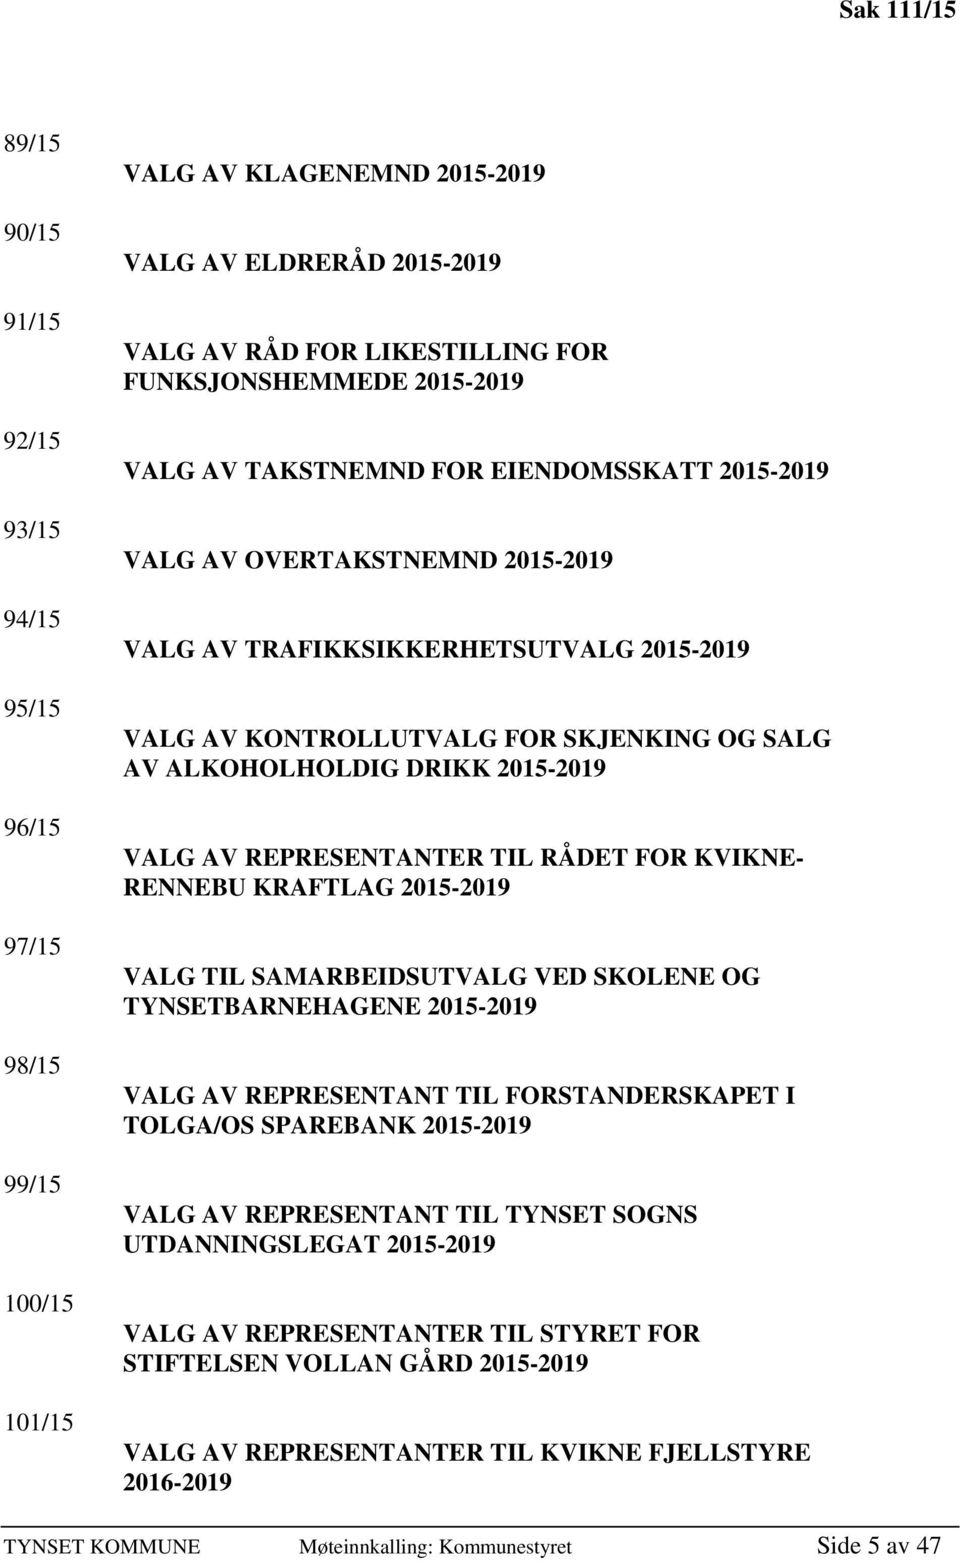 VALG AV REPRESENTANTER TIL RÅDET FOR KVIKNE- RENNEBU KRAFTLAG 2015-2019 VALG TIL SAMARBEIDSUTVALG VED SKOLENE OG TYNSETBARNEHAGENE 2015-2019 VALG AV REPRESENTANT TIL FORSTANDERSKAPET I TOLGA/OS